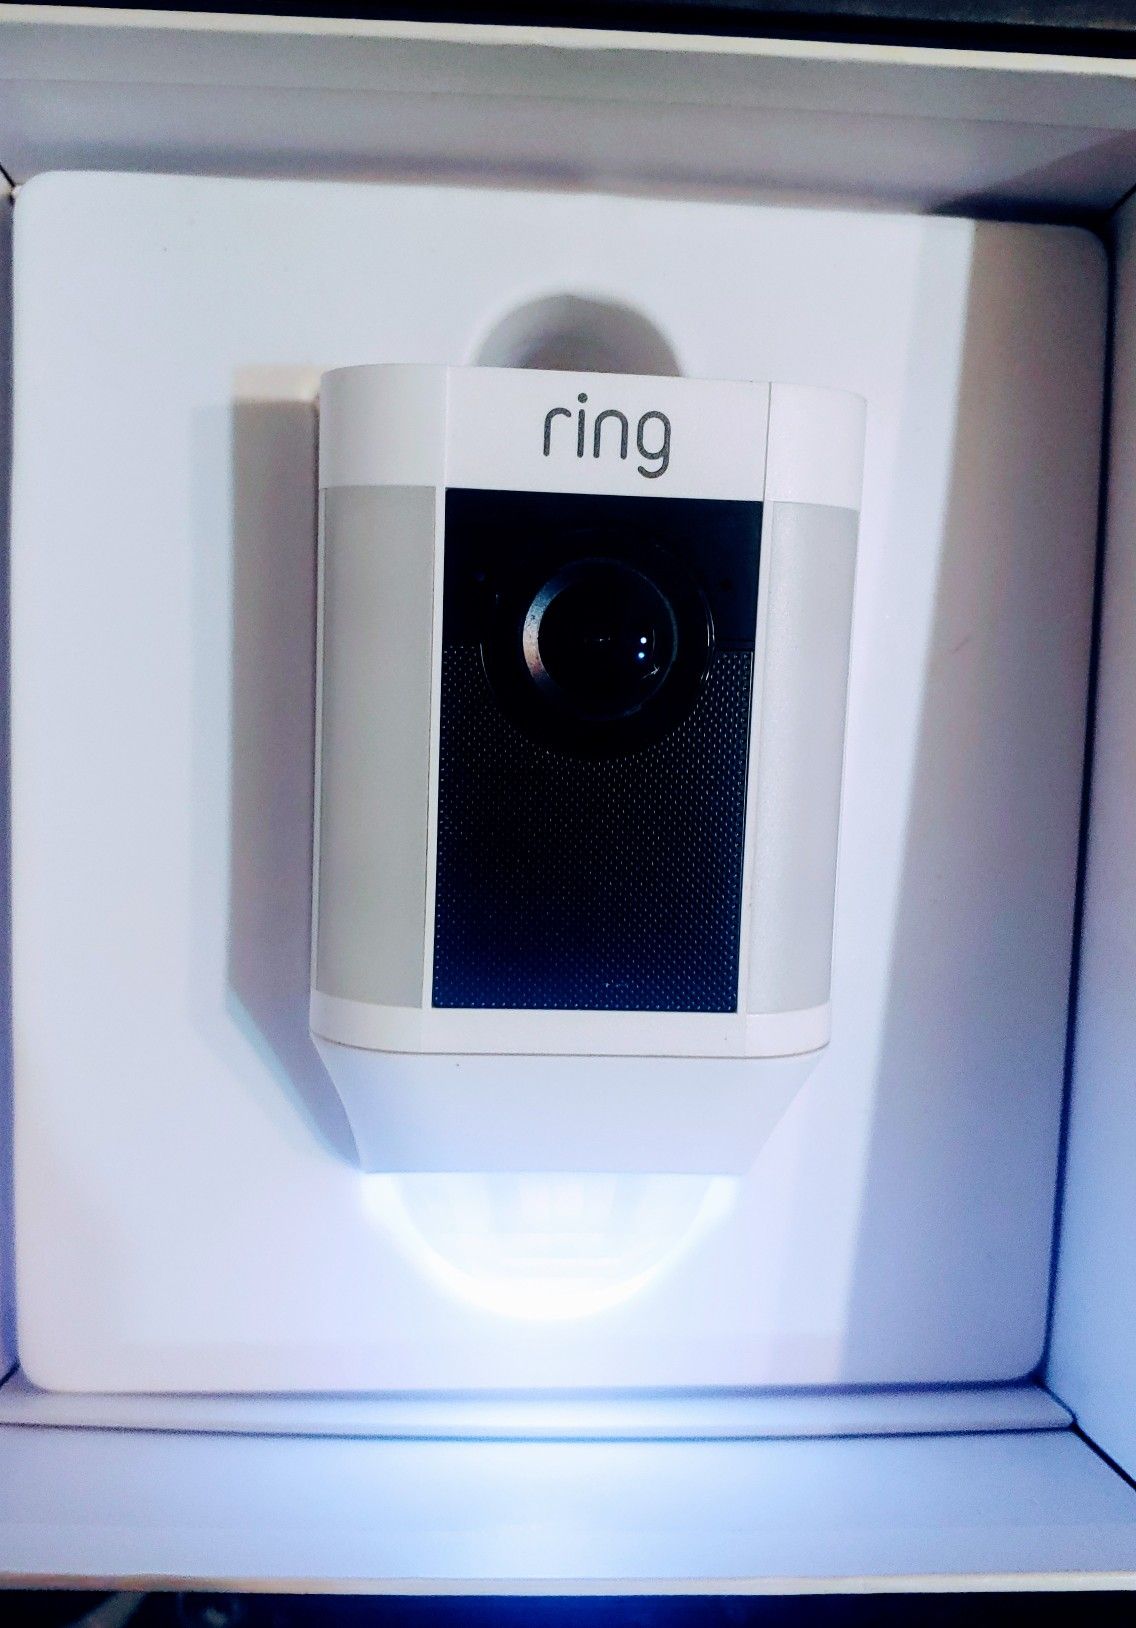 Ring Spotlight Camera